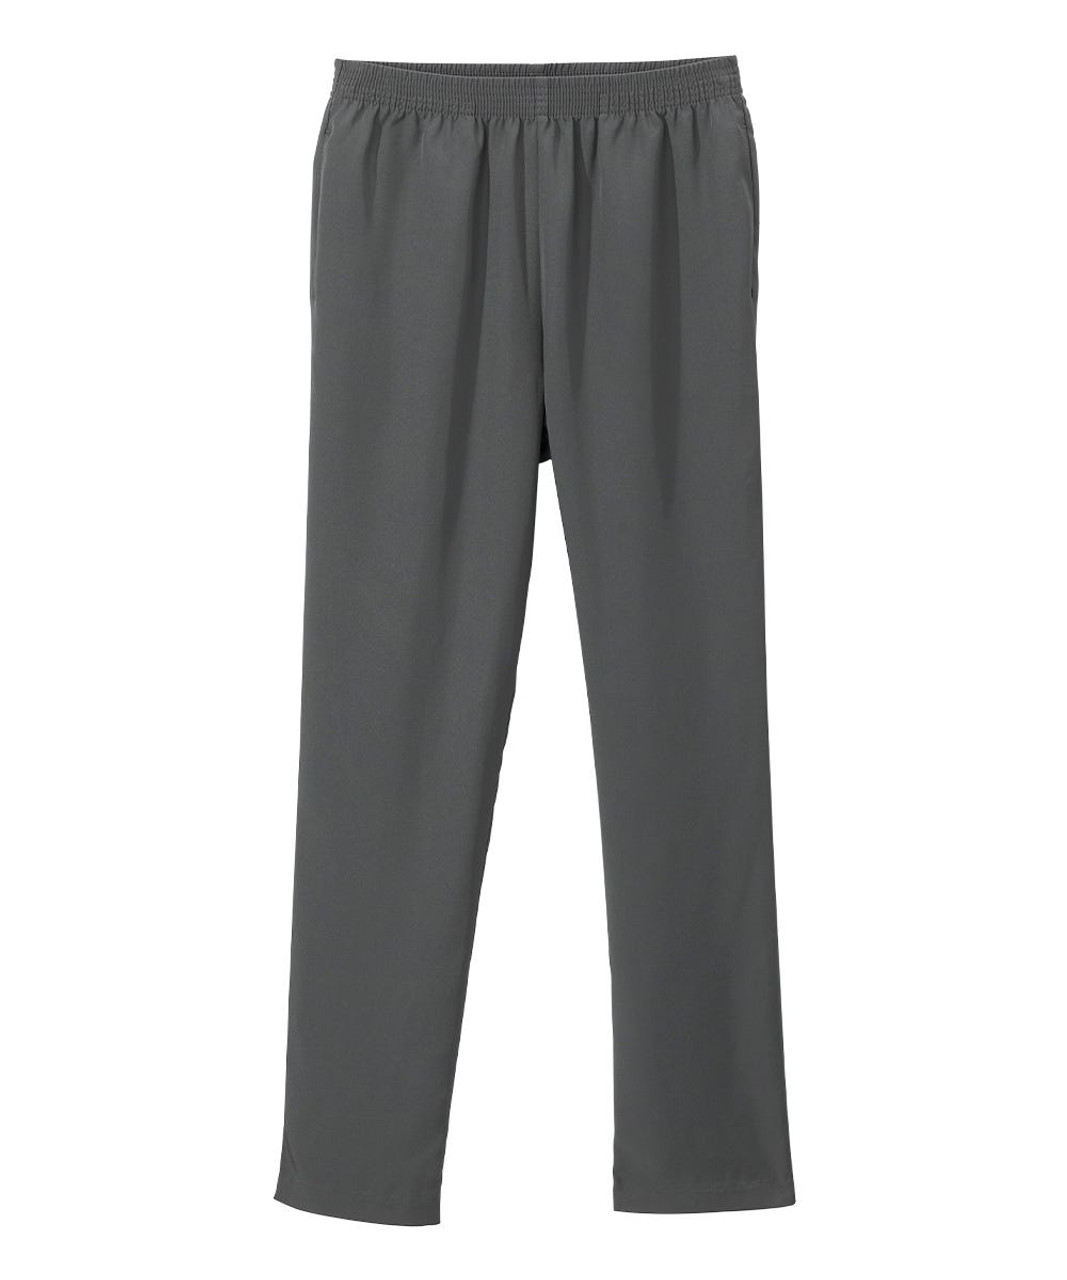 Silverts SV13090 Senior Women's Pull-on Gabardine Pant - Elastic Waist Pants for Women Pewter, Size=10, SV13090-PWT-10